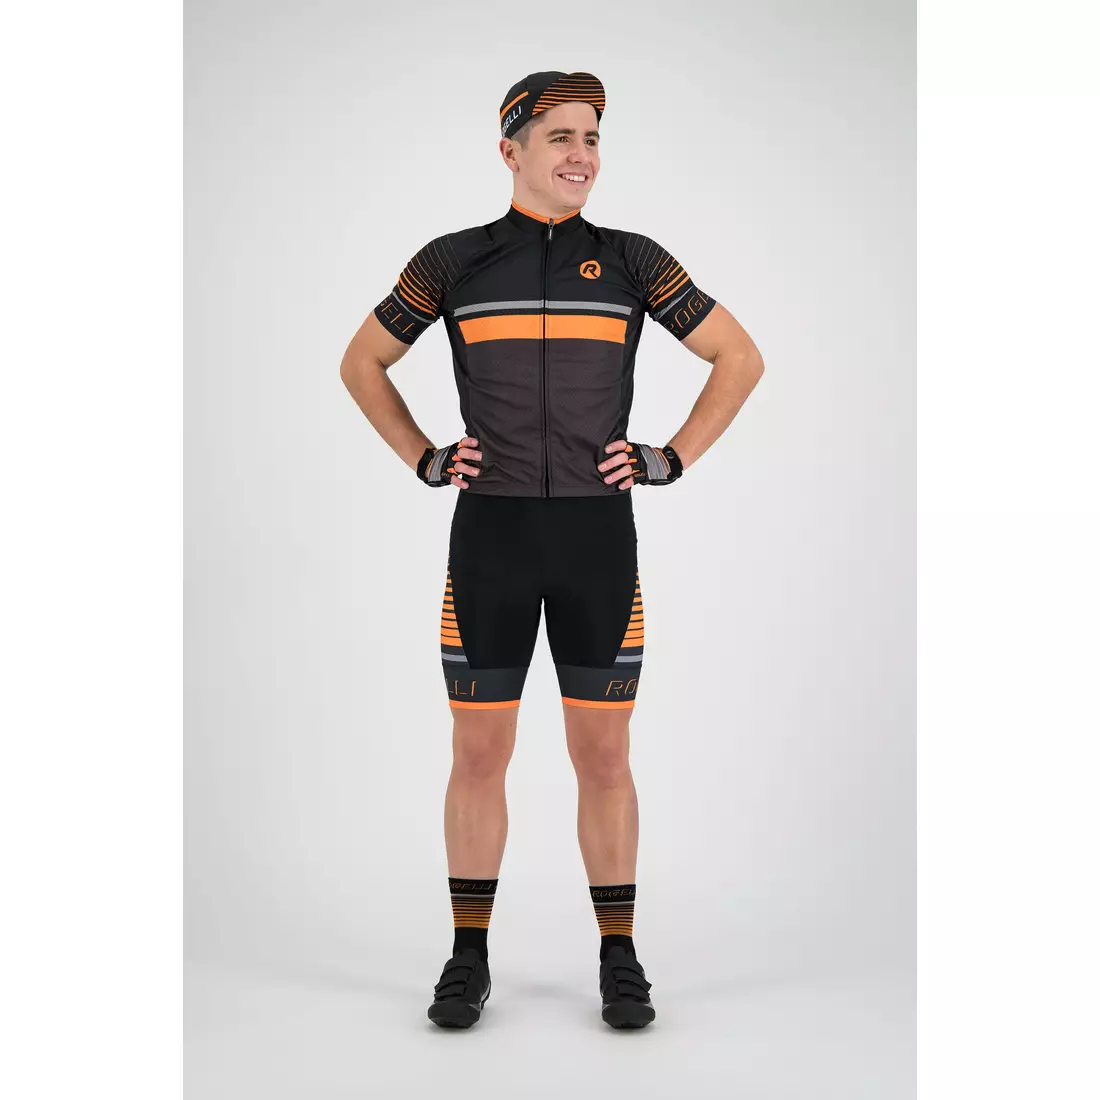 Rogelli HERO 001.264 tricou de ciclism pentru bărbați Gri / Negru / Portocaliu